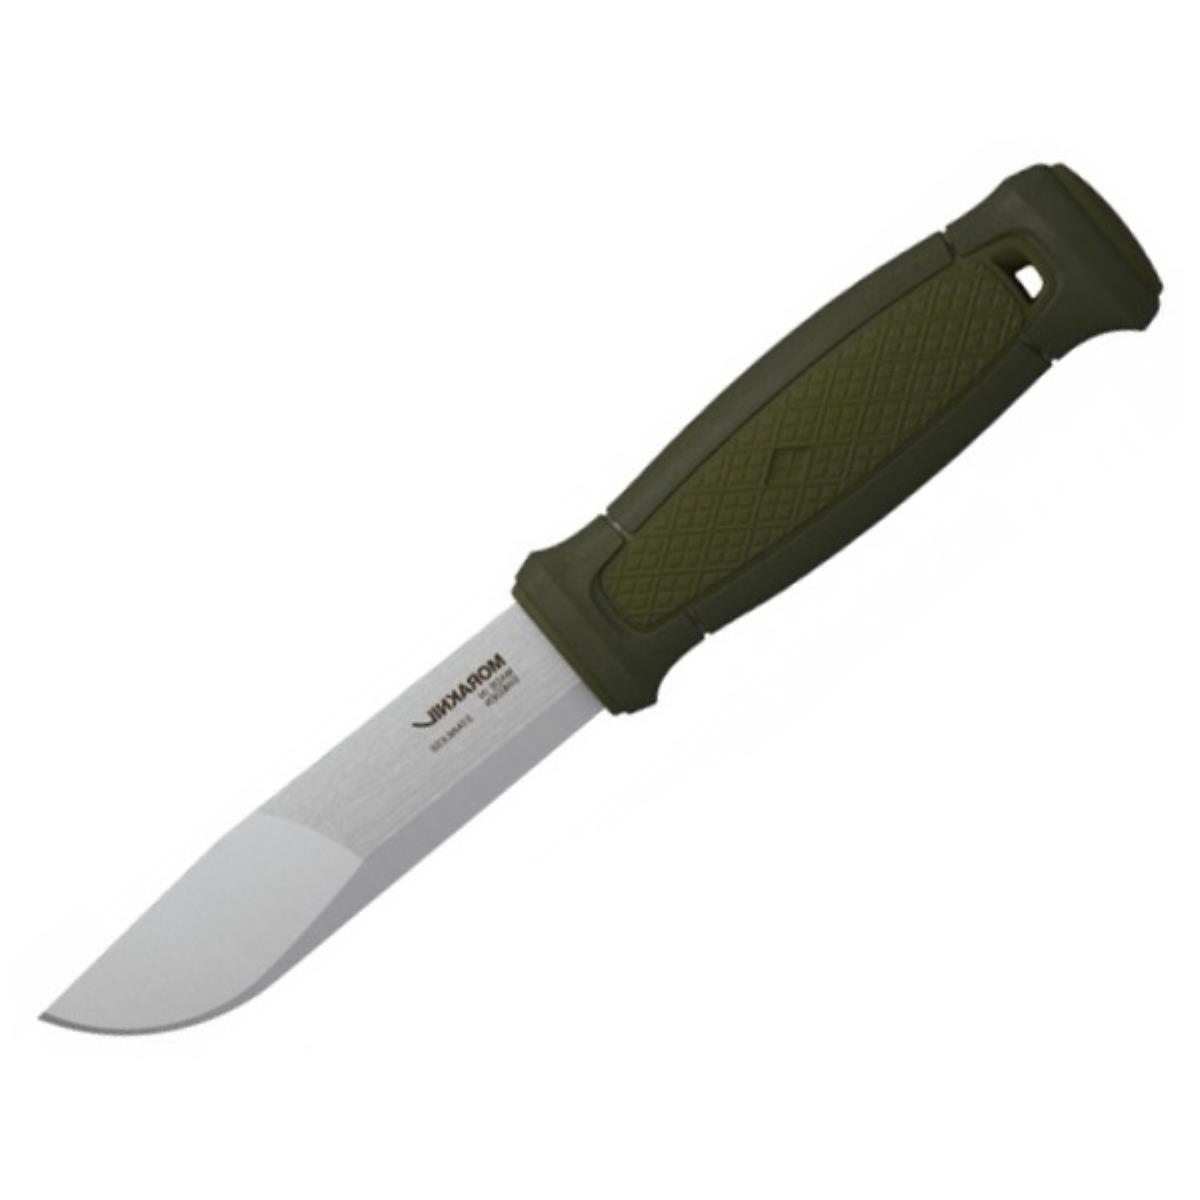 Нож Kansbol Multi-Mount (12645) Morakniv нож kniv craftline q allround 0711 11481 morakniv